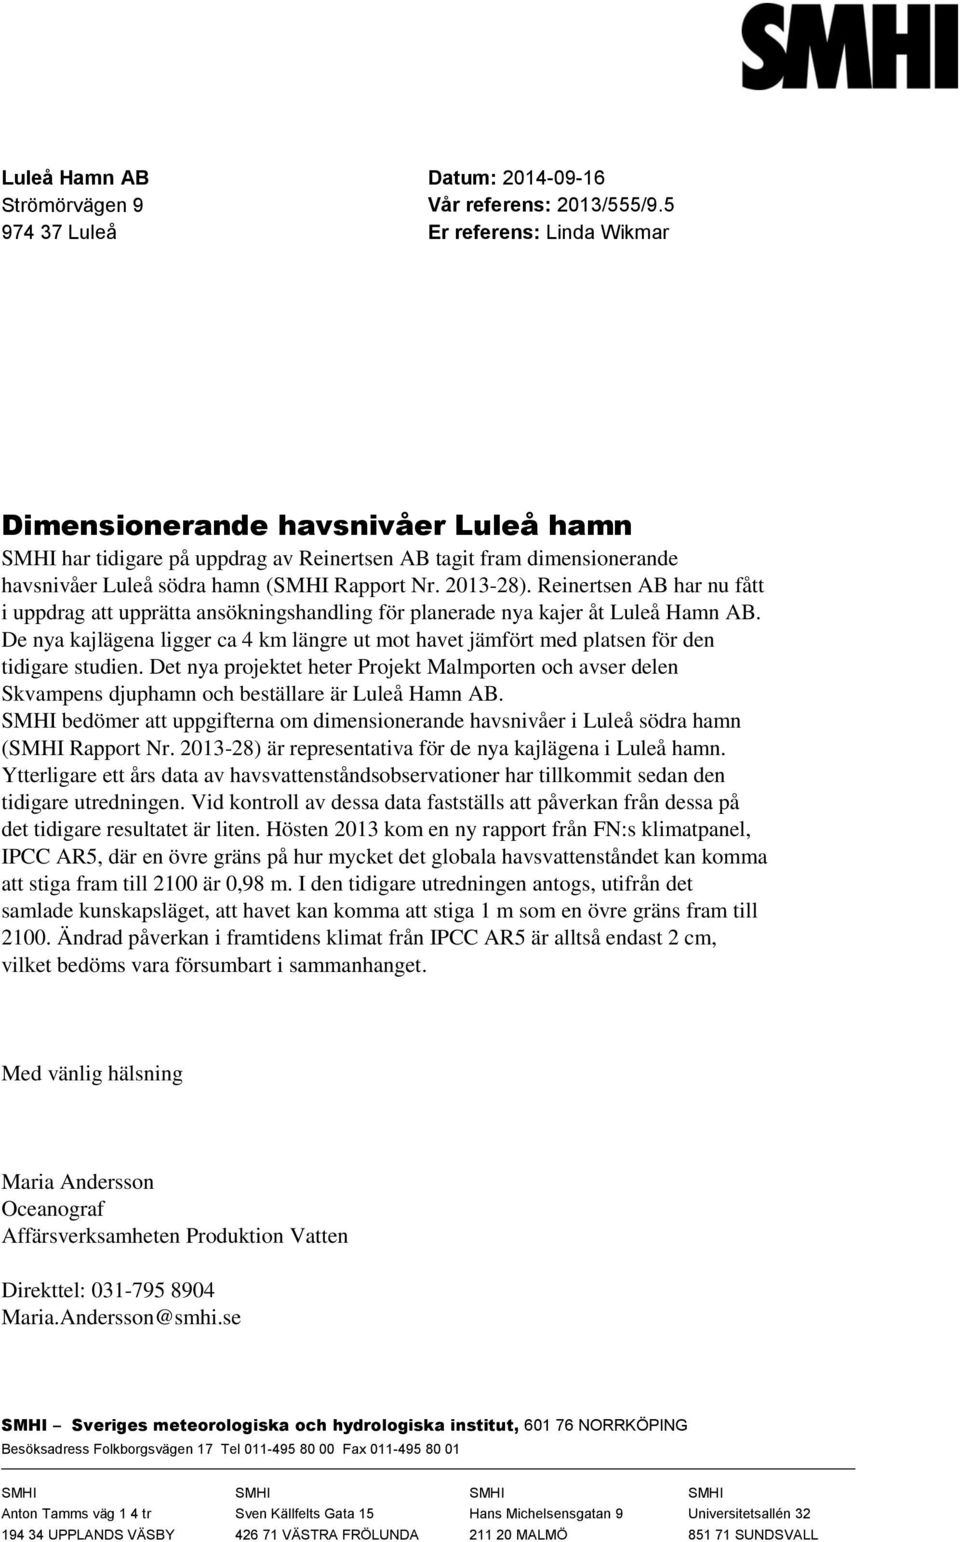 Reinertsen AB har nu fått i uppdrag att upprätta ansökningshandling för planerade nya kajer åt Luleå Hamn AB.